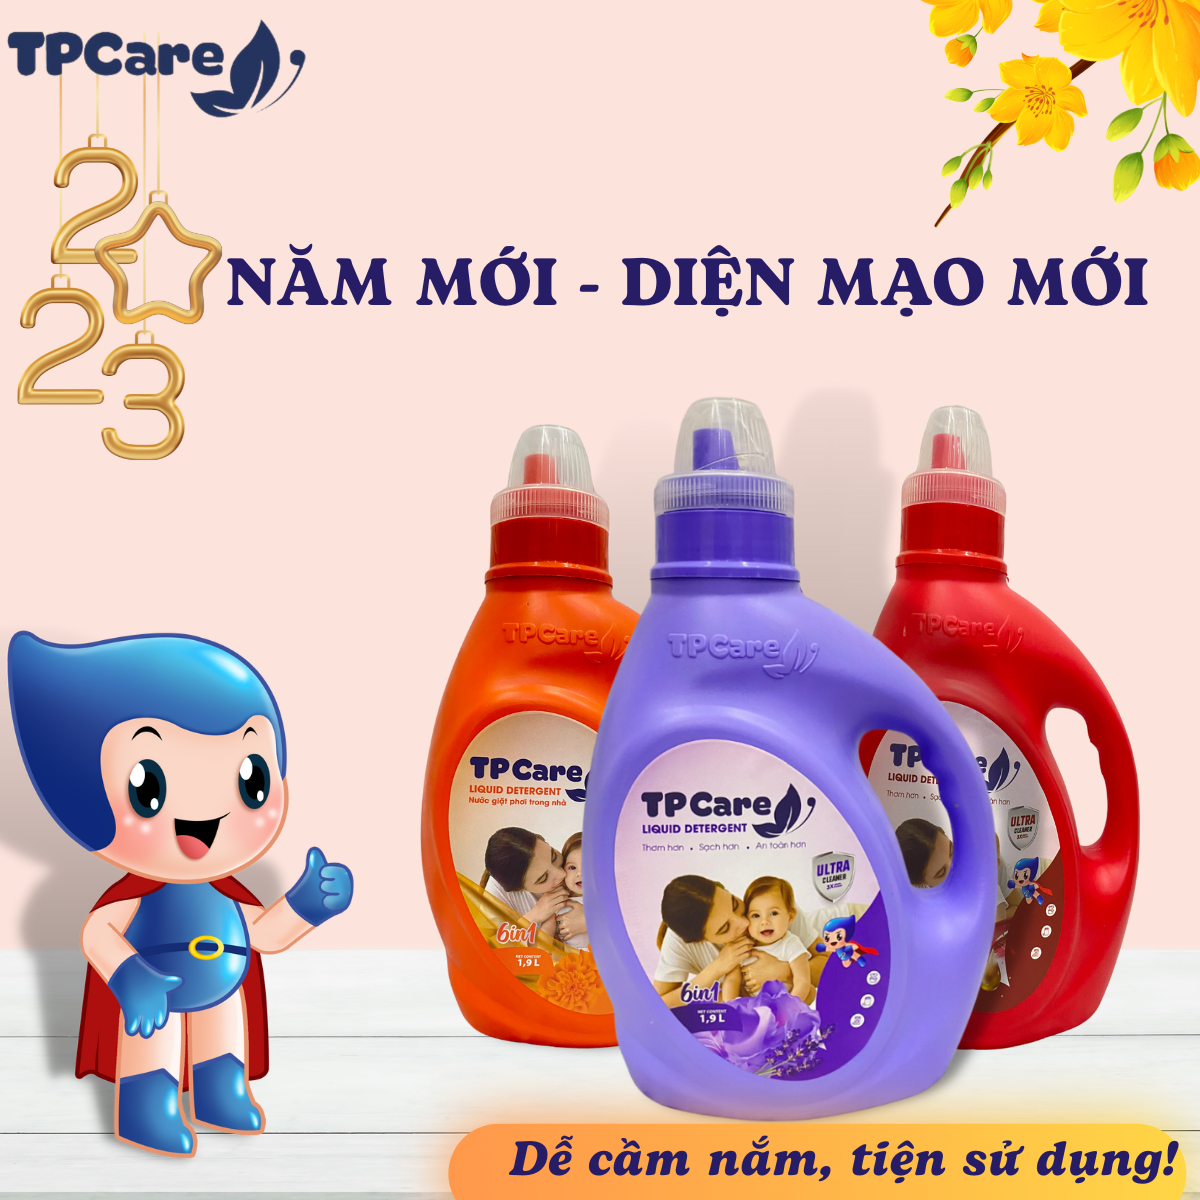 6 lợi ích khi sử dụng nước giặt TPCare 6in1 cho gia đình